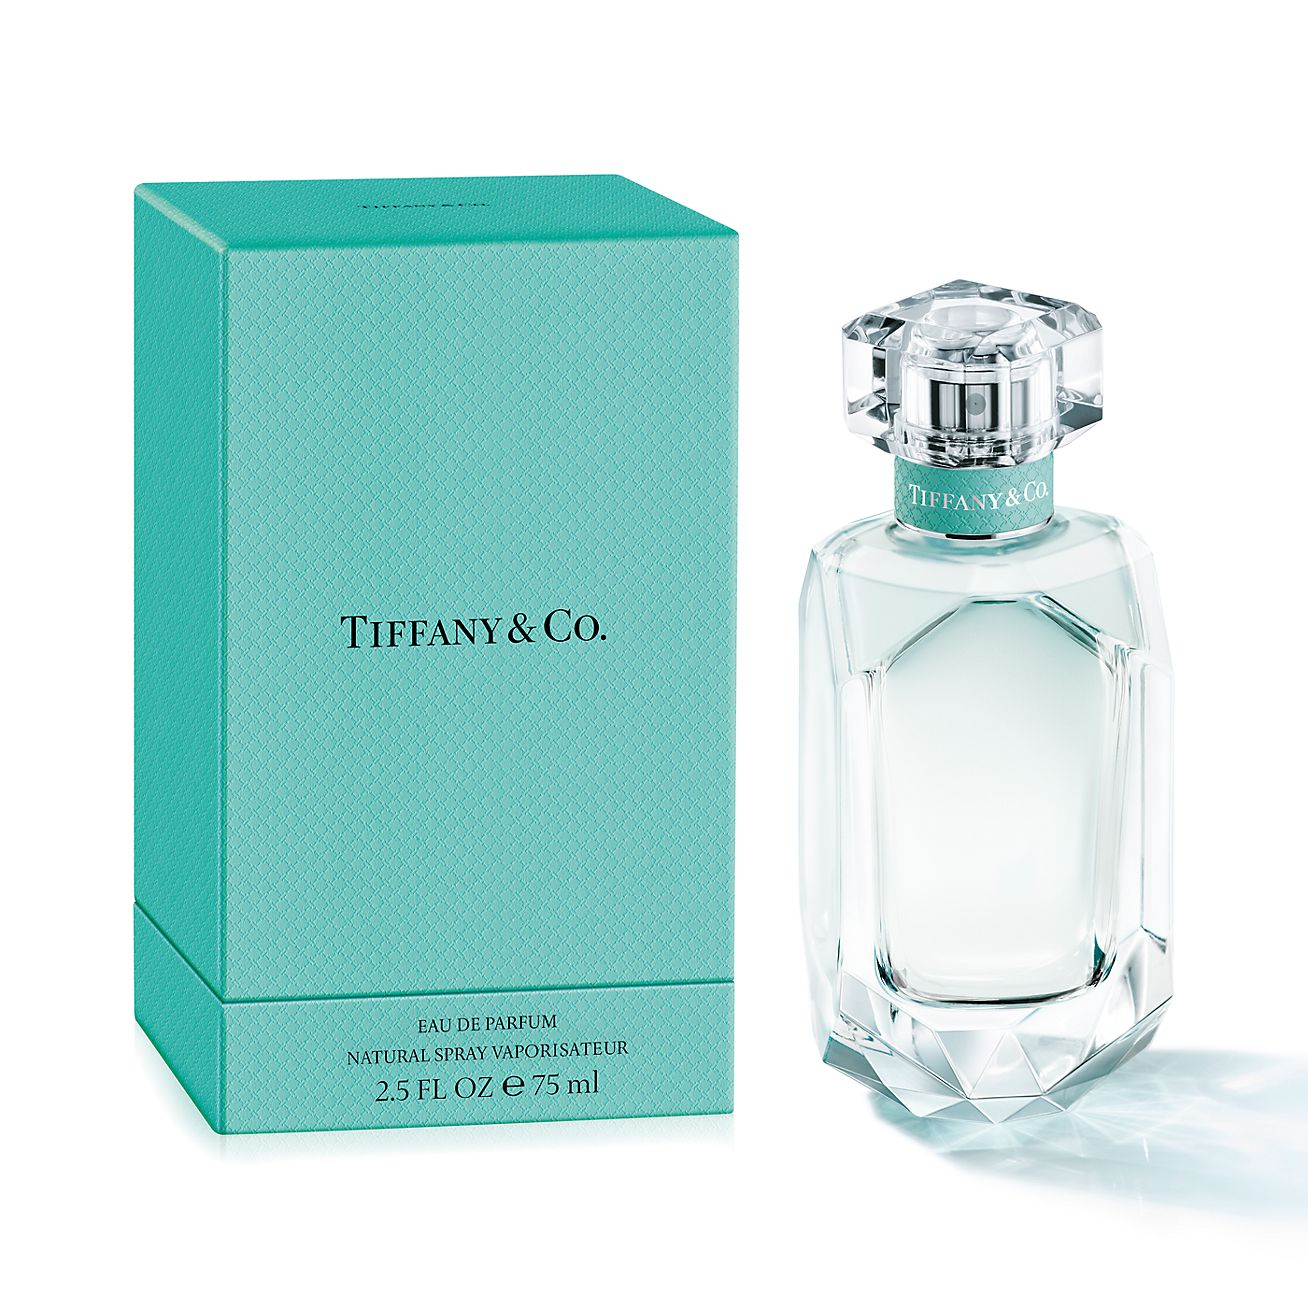 Tiffany eau de parfum, 75ml.| Tiffany \u0026 Co.